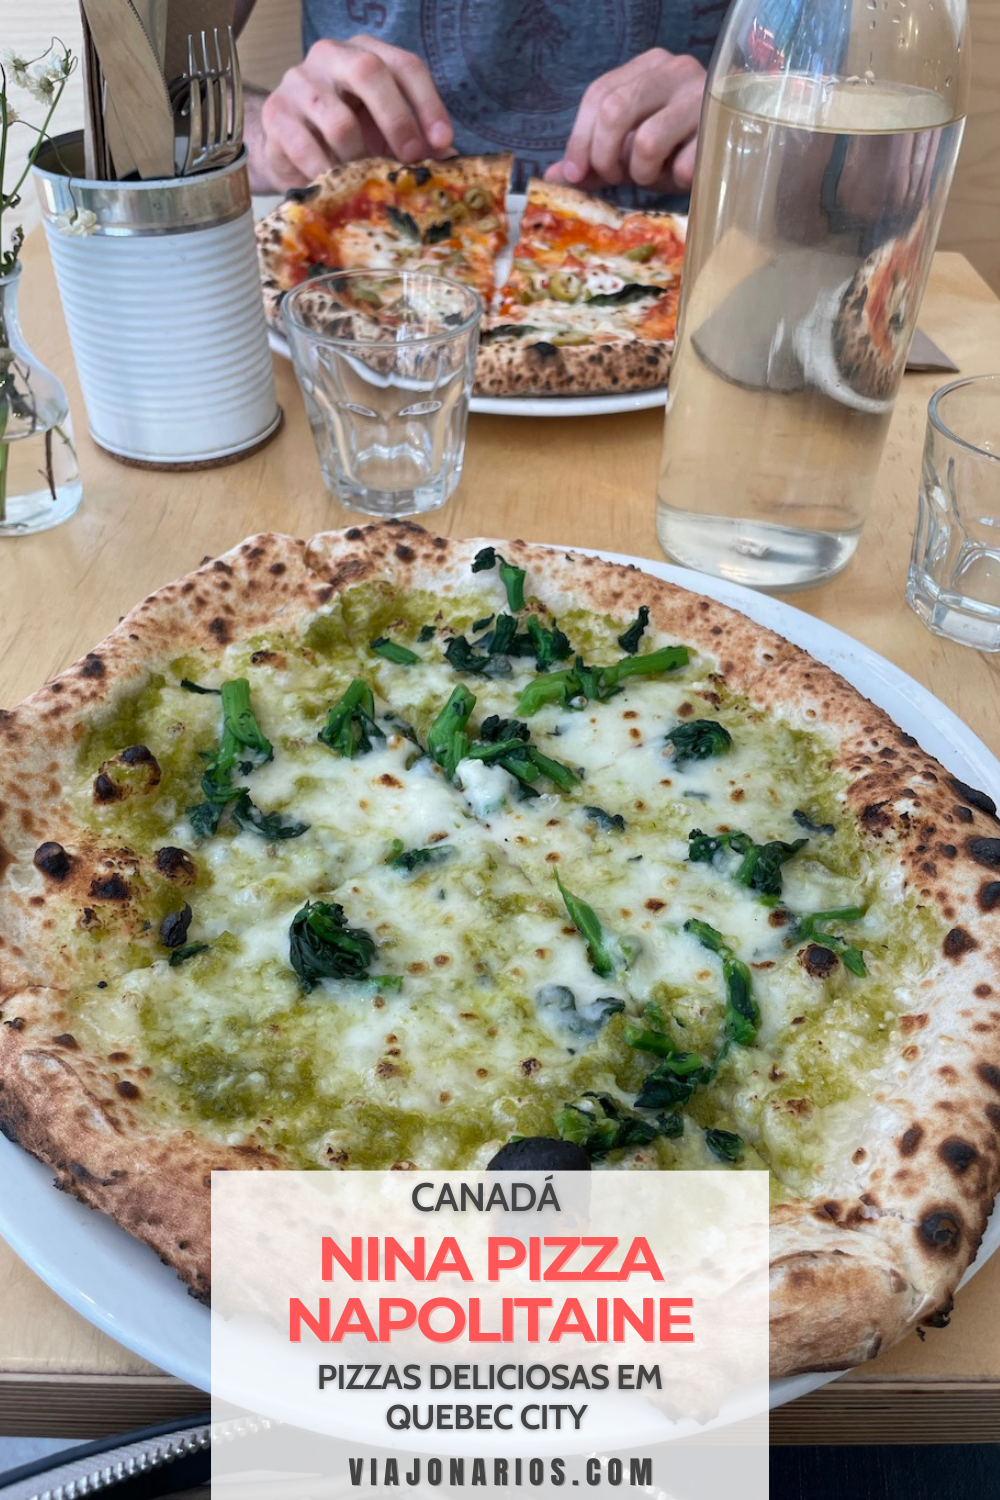 Nina Pizza Napolitaine: deliciosas pizzas en la ciudad de Quebec | https://viajonarios.com/nina-pizza-napolitaine/ | #viajonarios #pizza #quebec #quebeccity #pizzeria #ninapizza #comida #gastronomía #veganfriendly #restaurant #pizzeria 